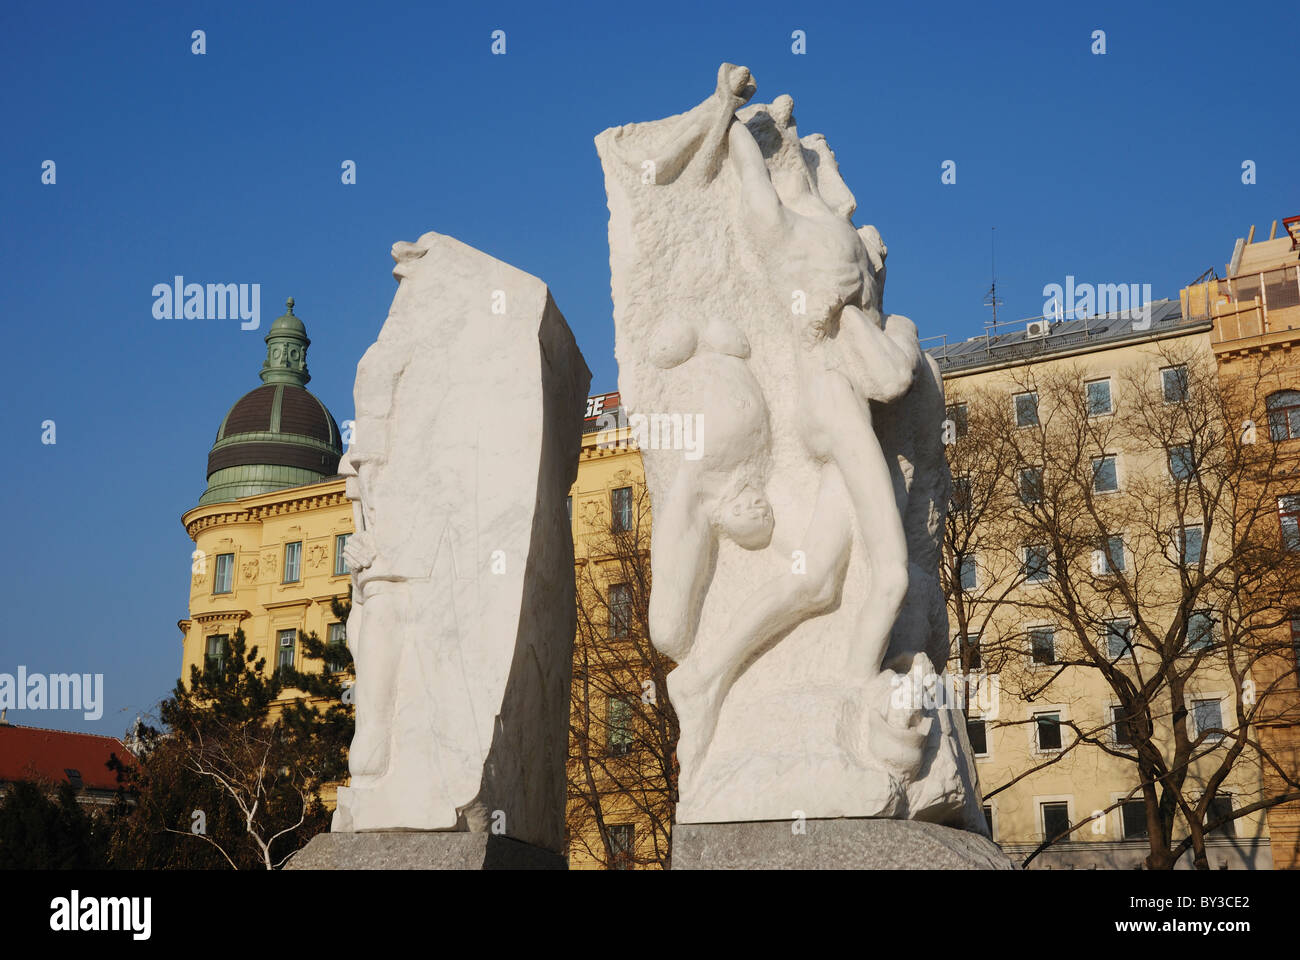 Memorial against War and Fascism, Albertinaplatz, Vienna, Austria. Stock Photo